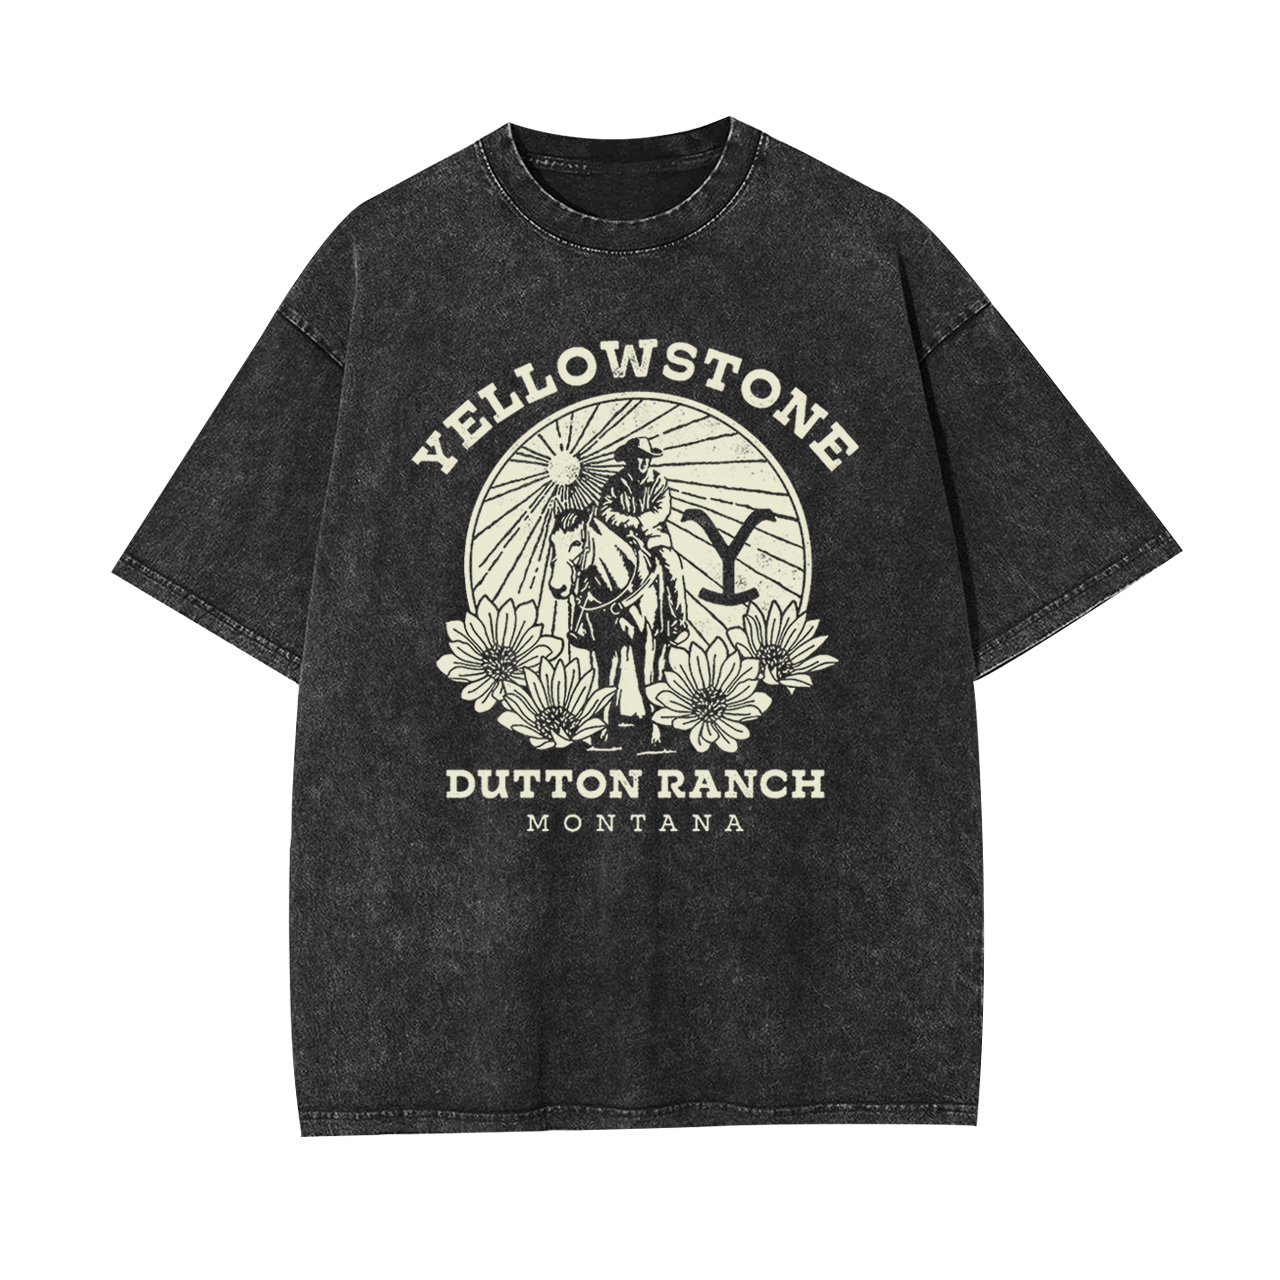 Yellowstone Dutton Ranch Garment-dye Tees